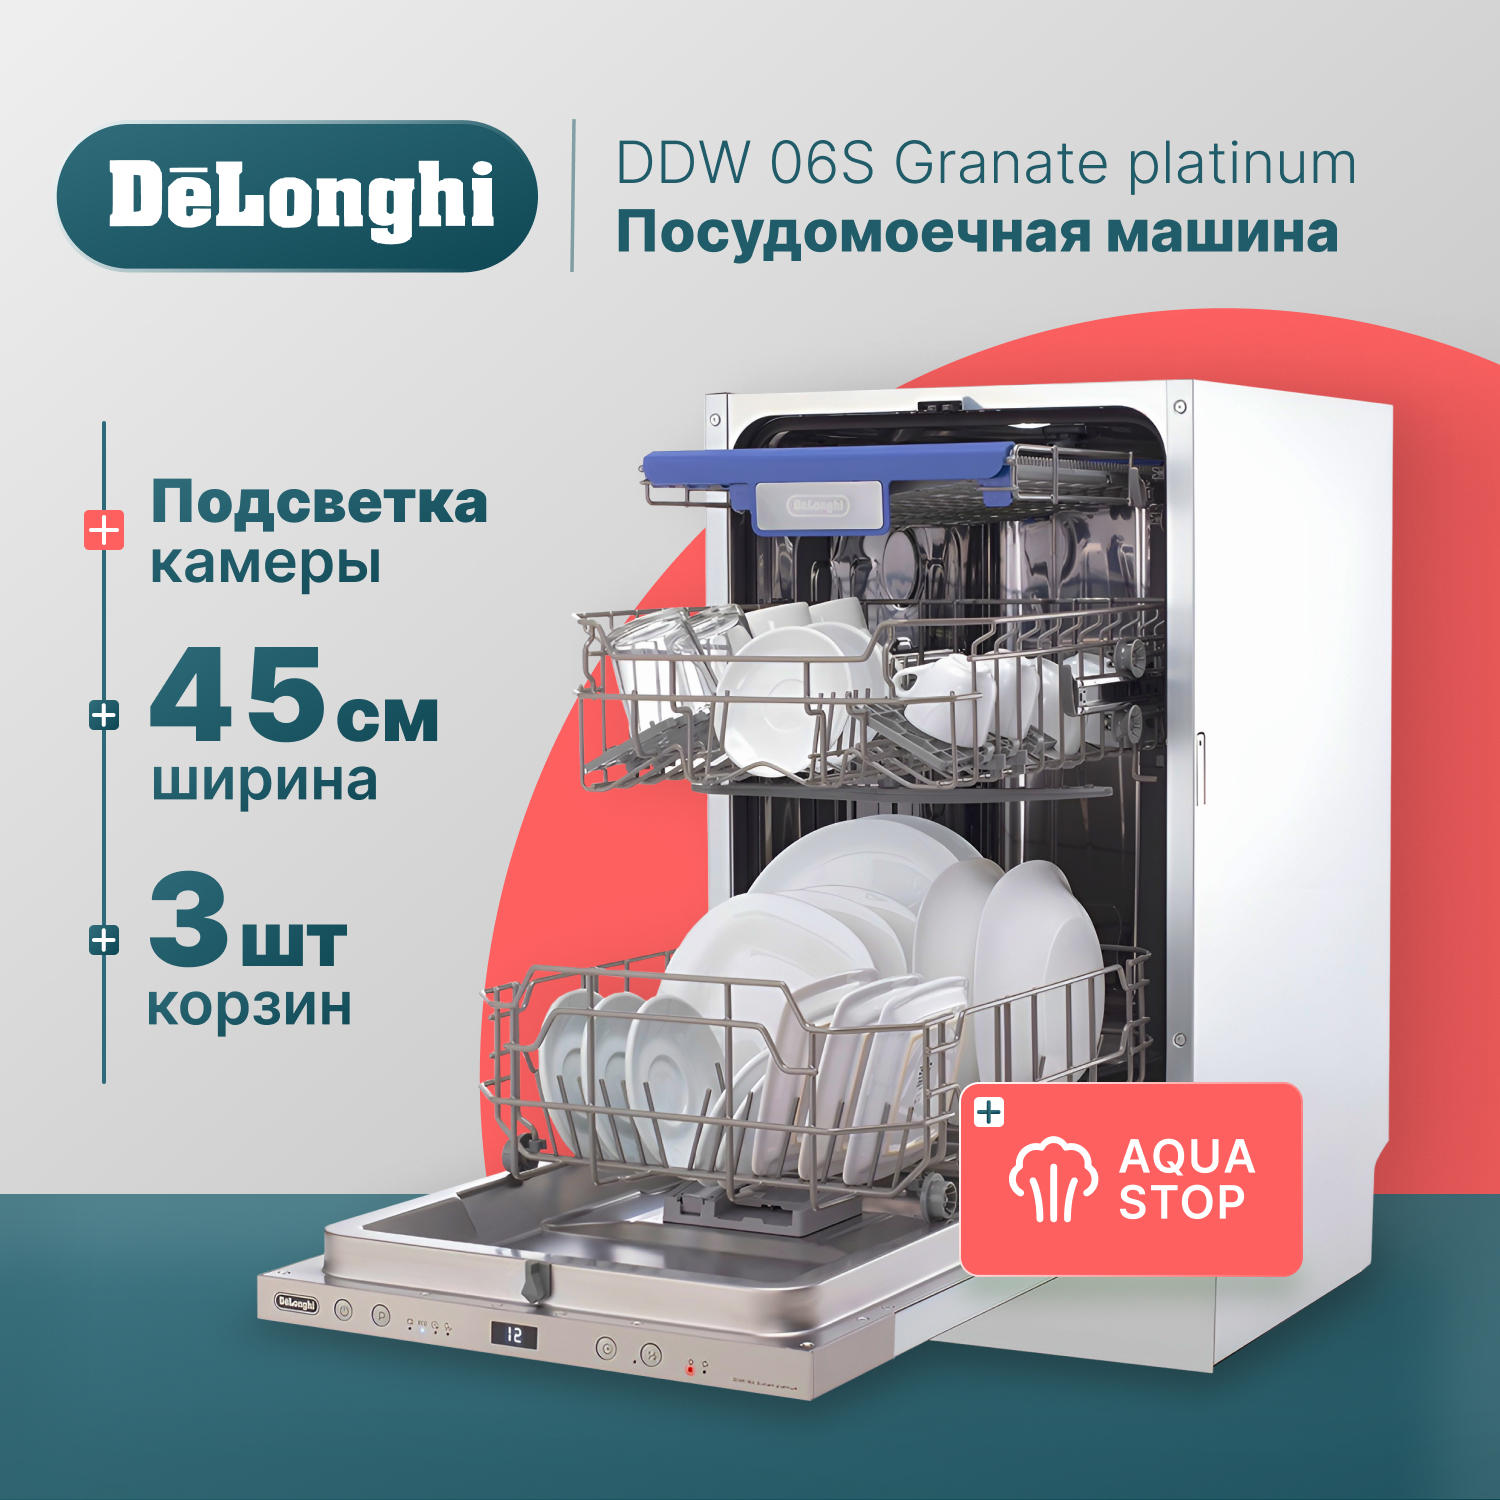 Встраиваемая посудомоечная машина Delonghi DDW06S Granate platinum встраиваемая посудомоечная машина delonghi ddw 06 s